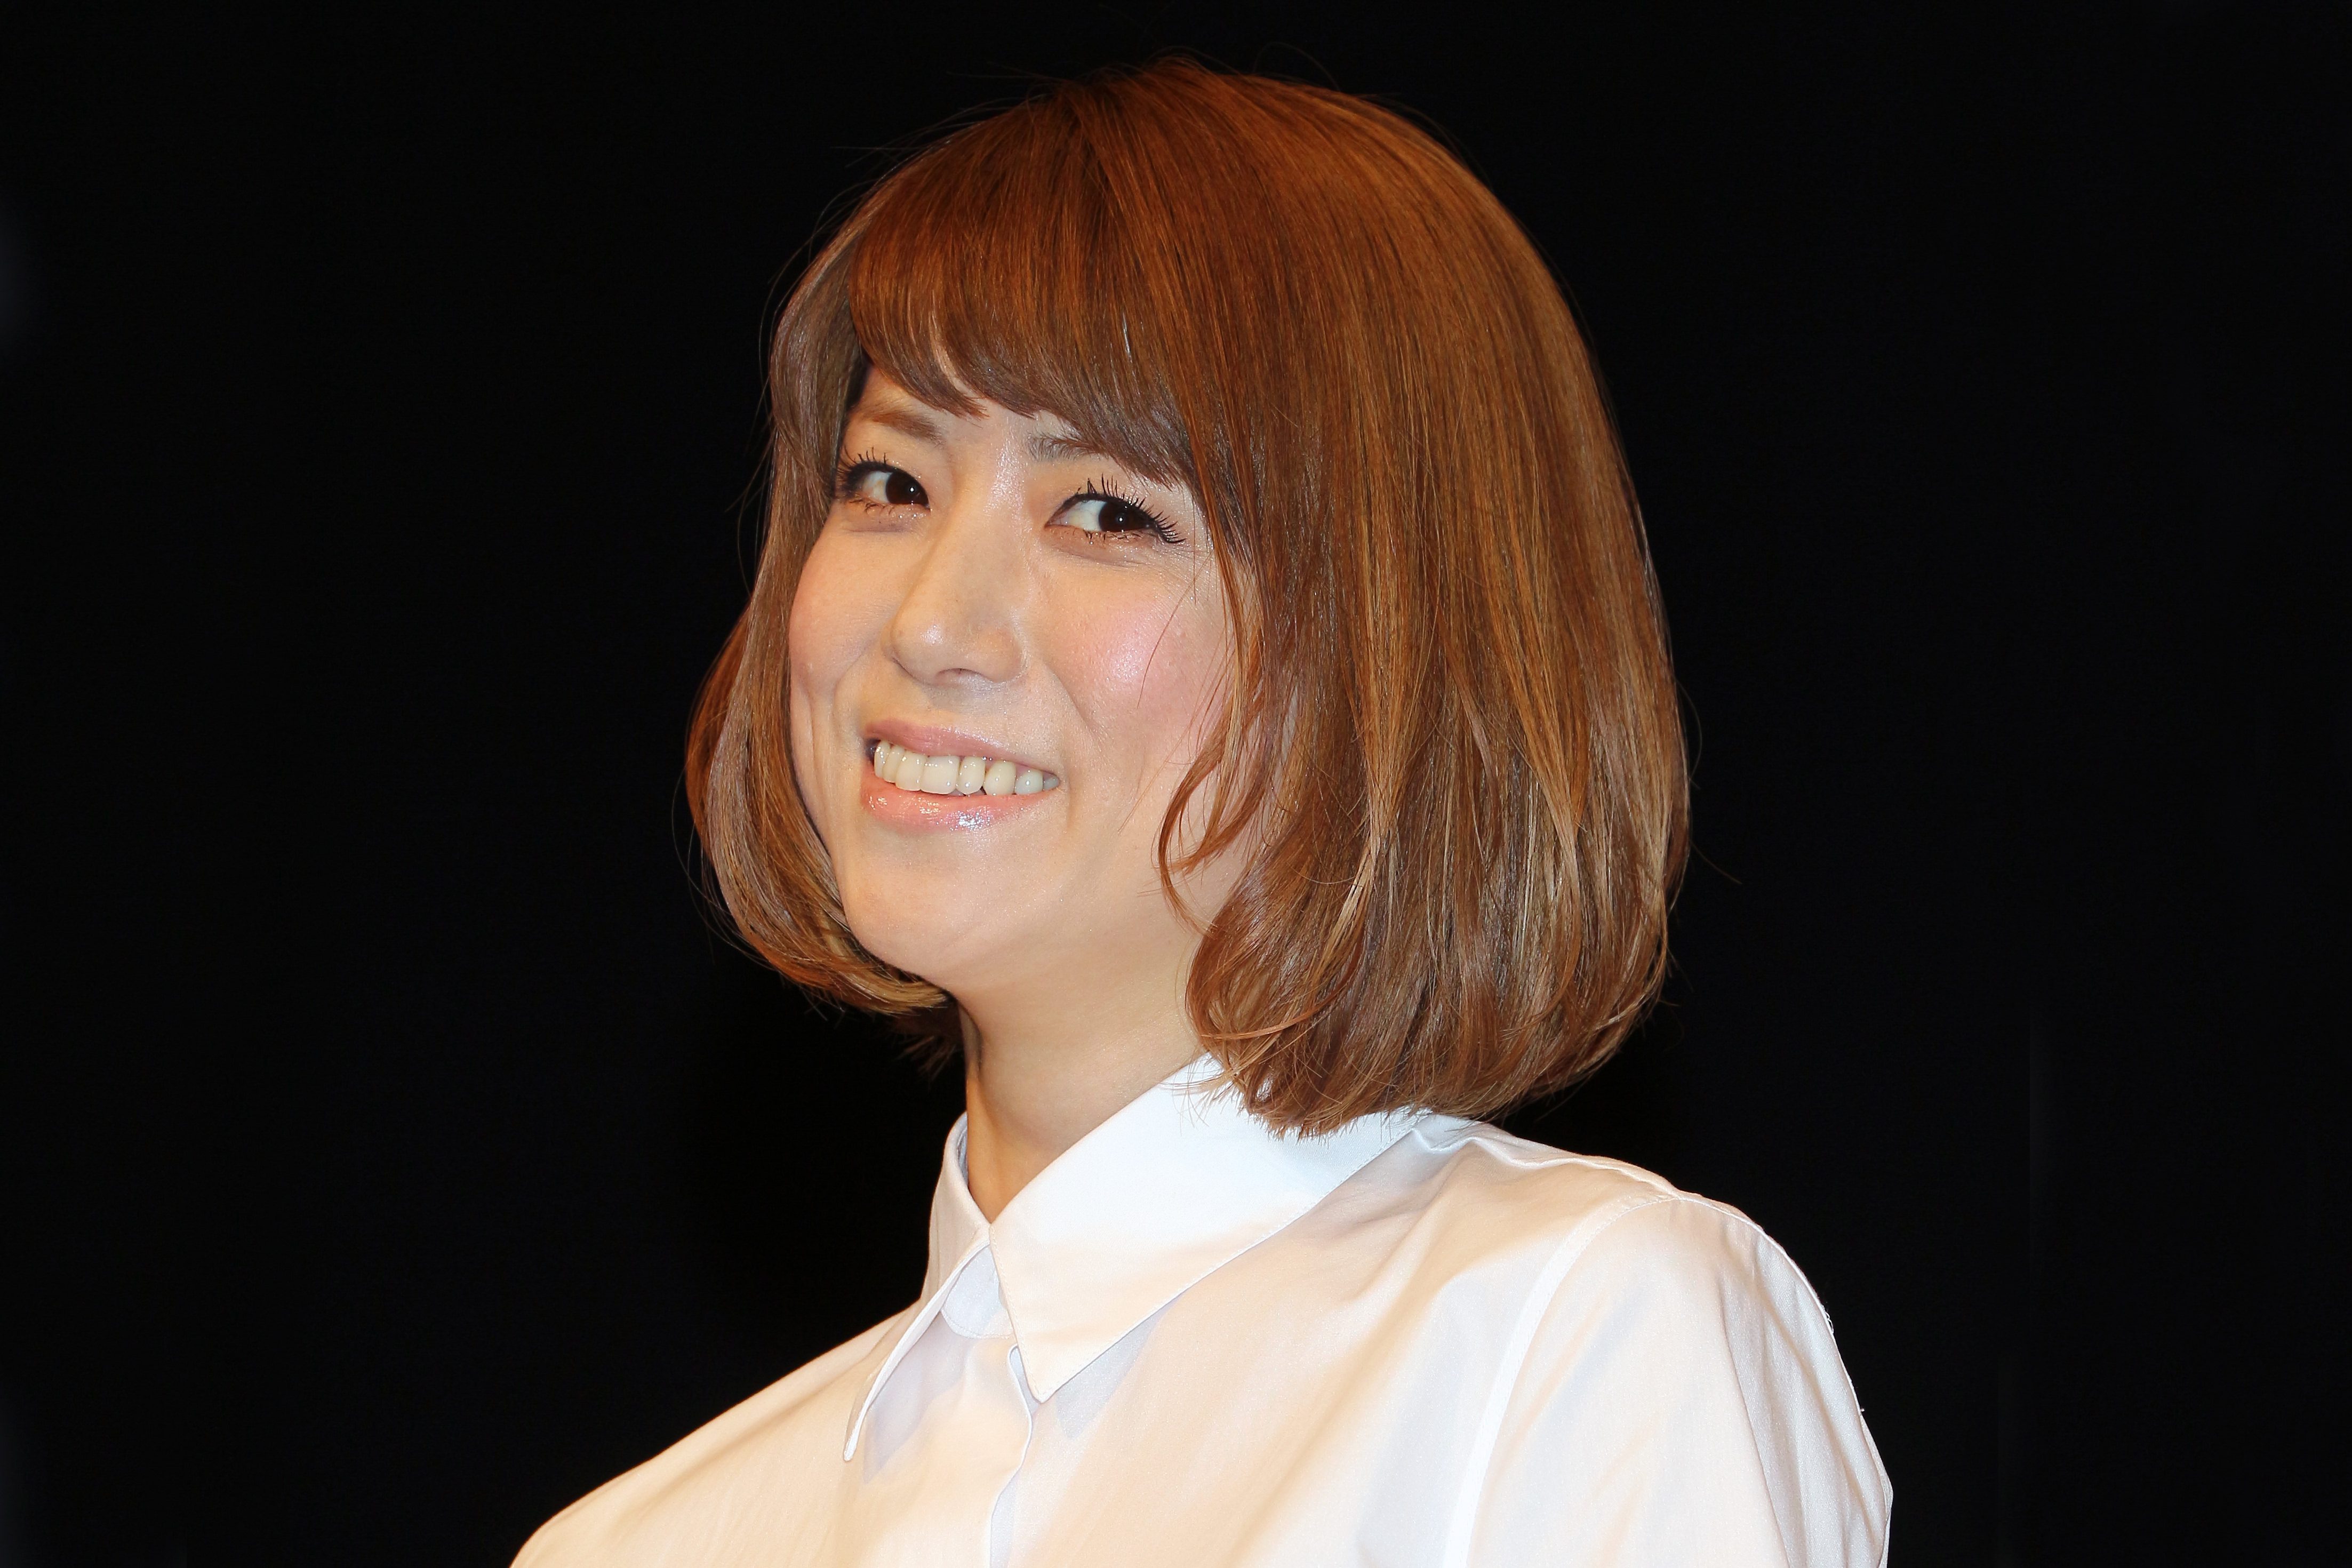 Hitomi ショートヘアが 賛否両論 と落胆 イメージが ニュース